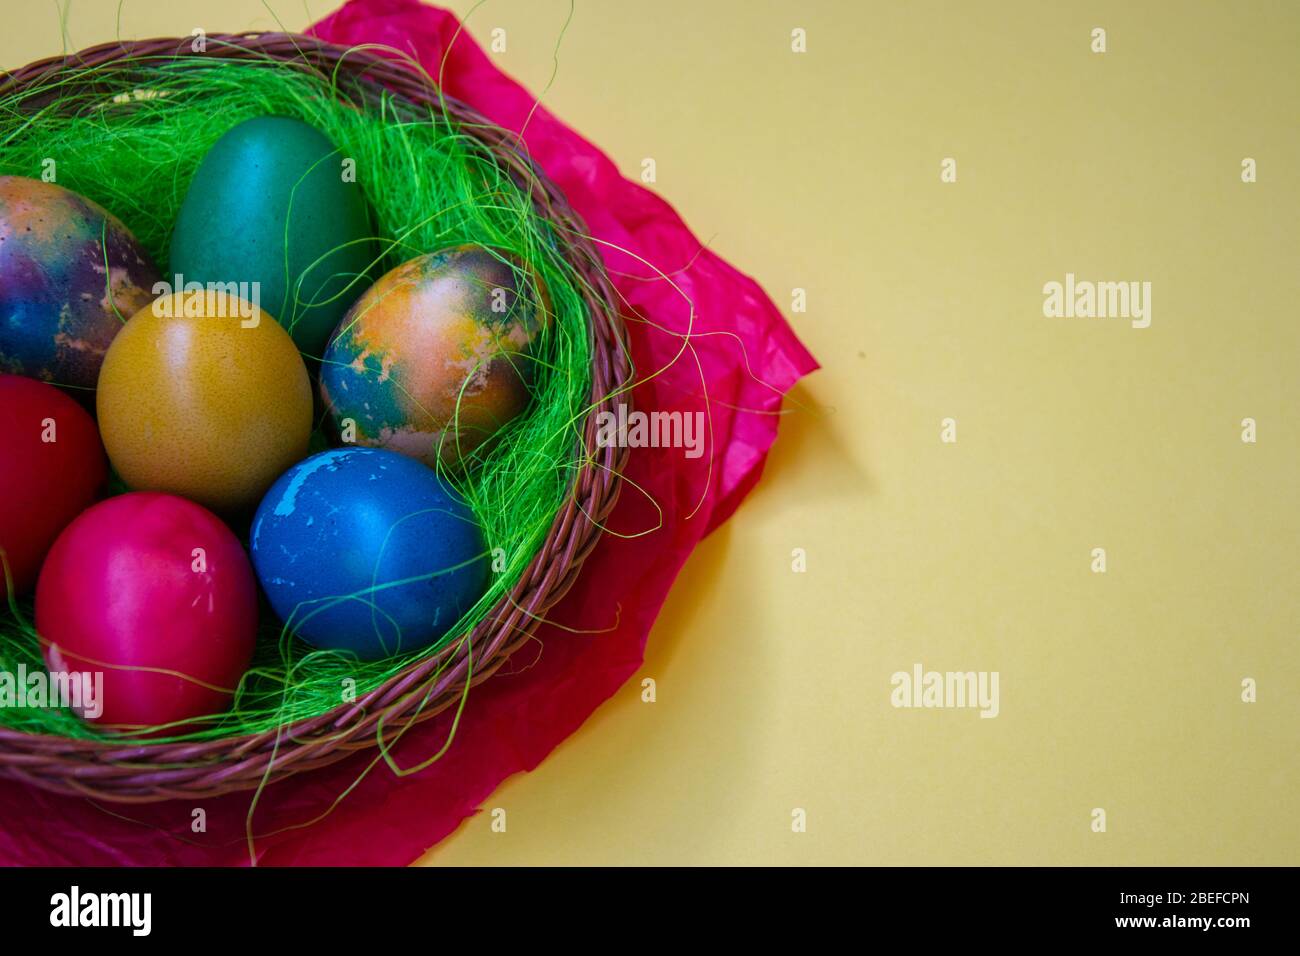 Grünes Gras Nest in einem Korb mit farbigen Hühnchen Ostereier, bunt bemalten Eiern, Ostertradition, Copy space, leerer Platz für Text, celebrat Stockfoto